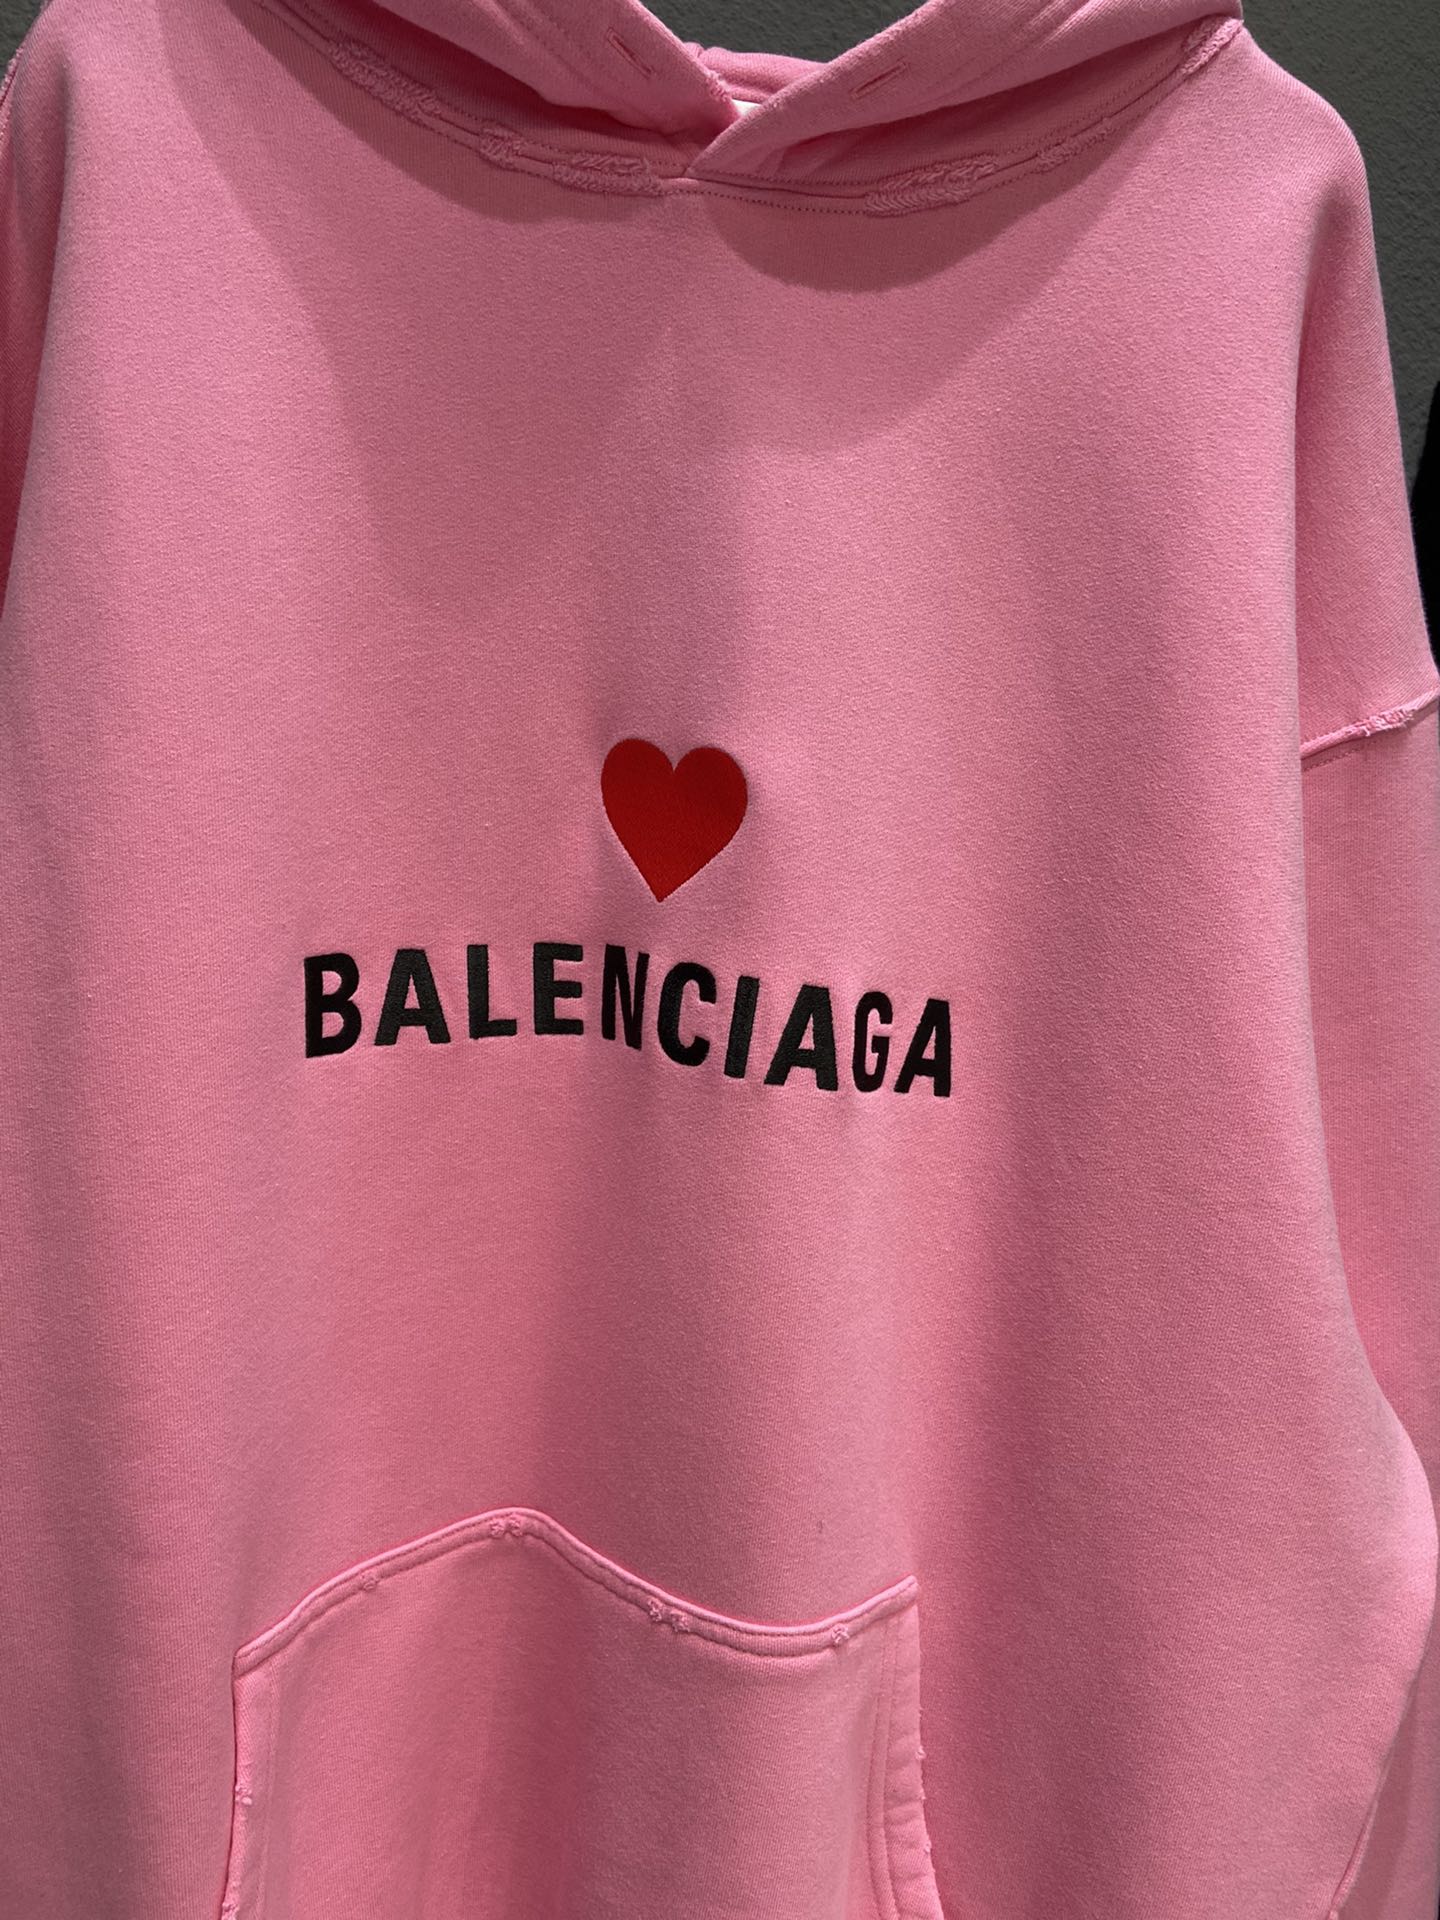 Top 15 mẫu Hoodie Balenciaga được săn đón nhất hiện nay  Coolmate